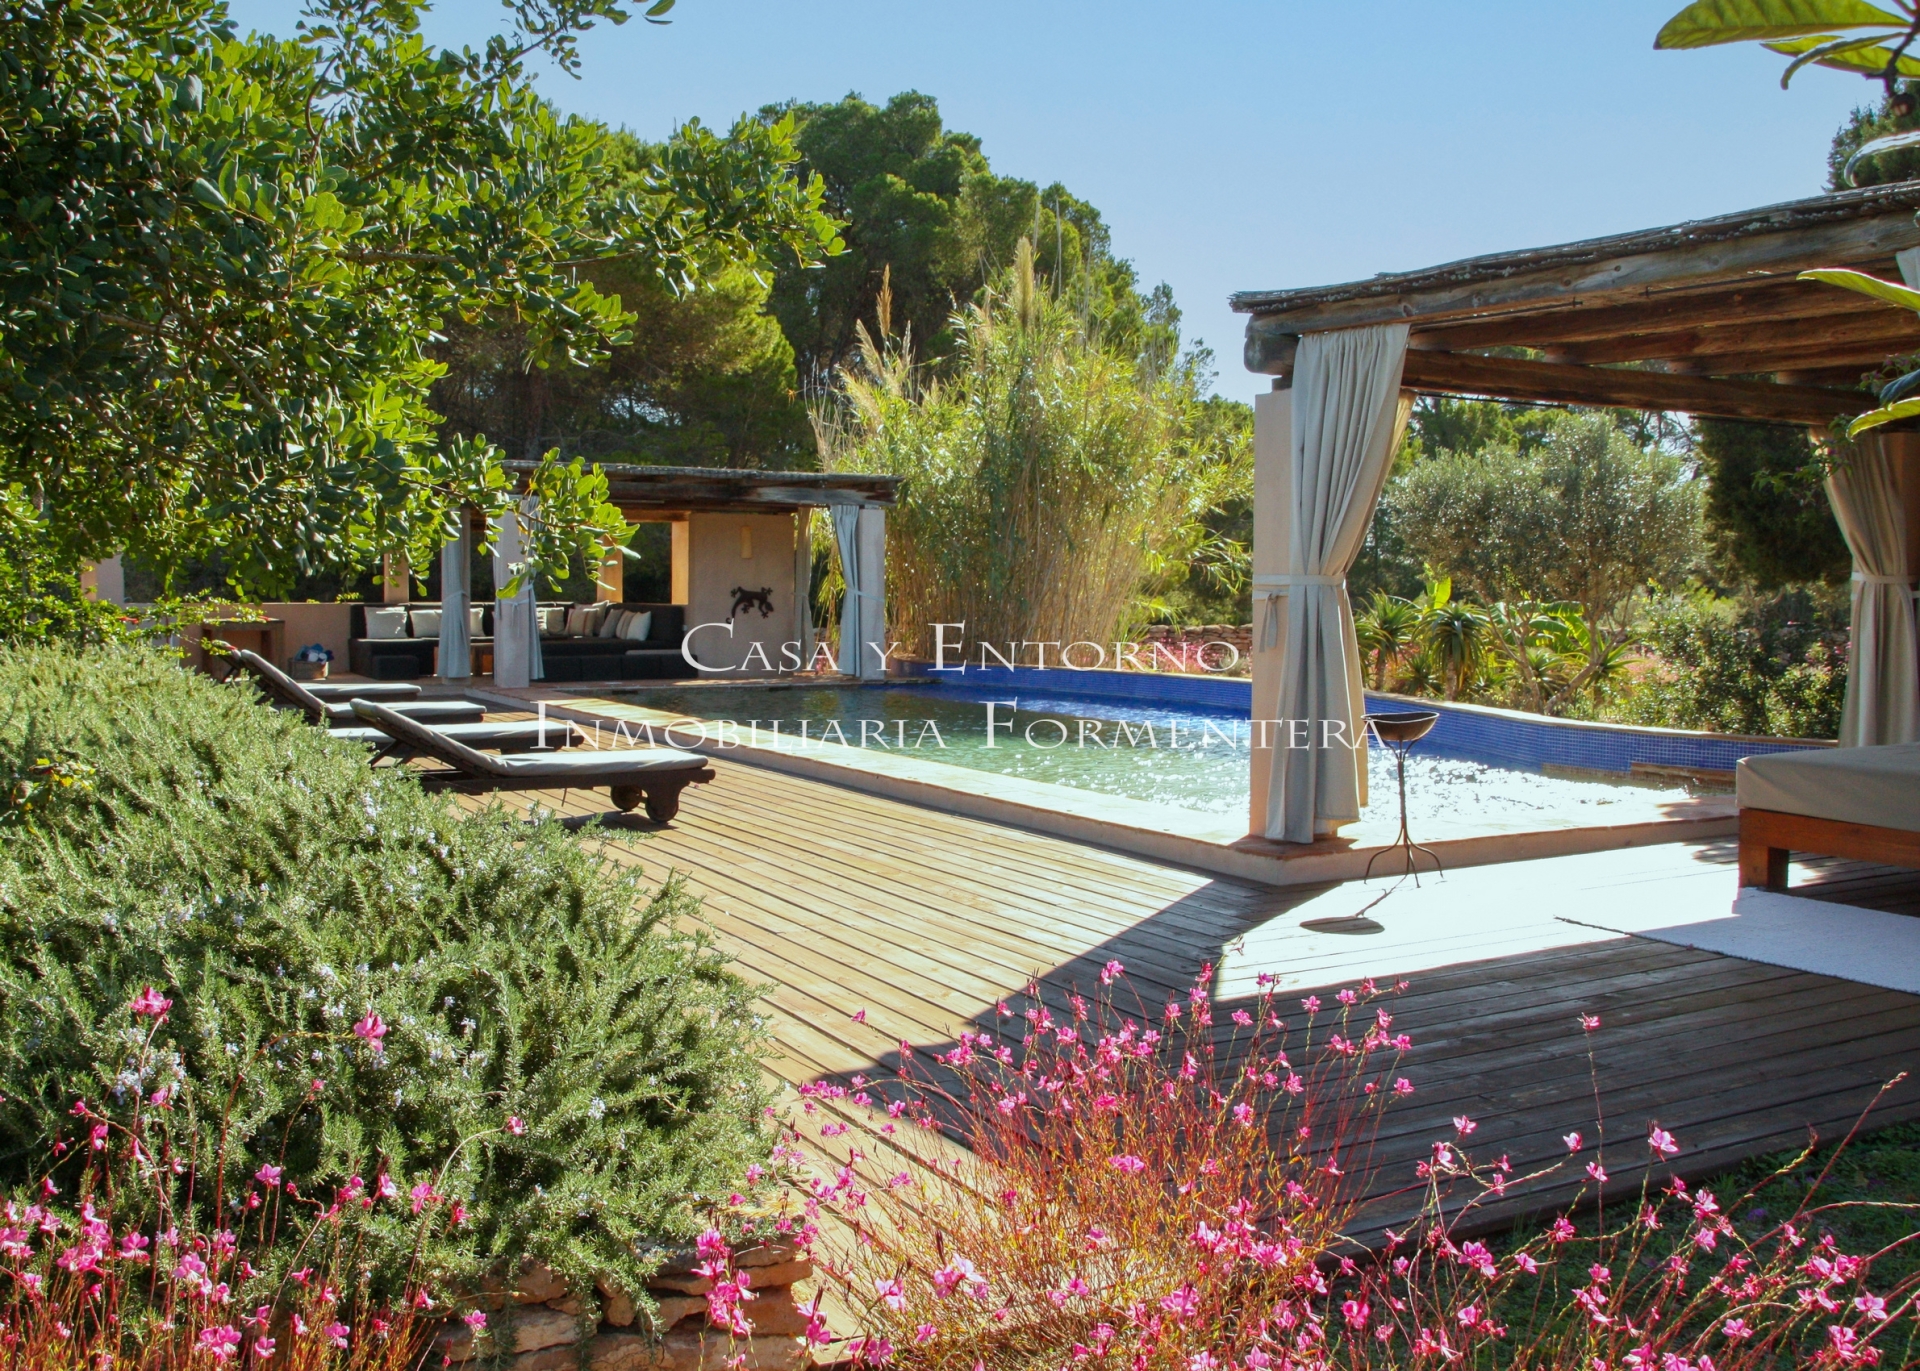 Villa con piscina, vigneto e licenza turistica a Es Cap, Formentera